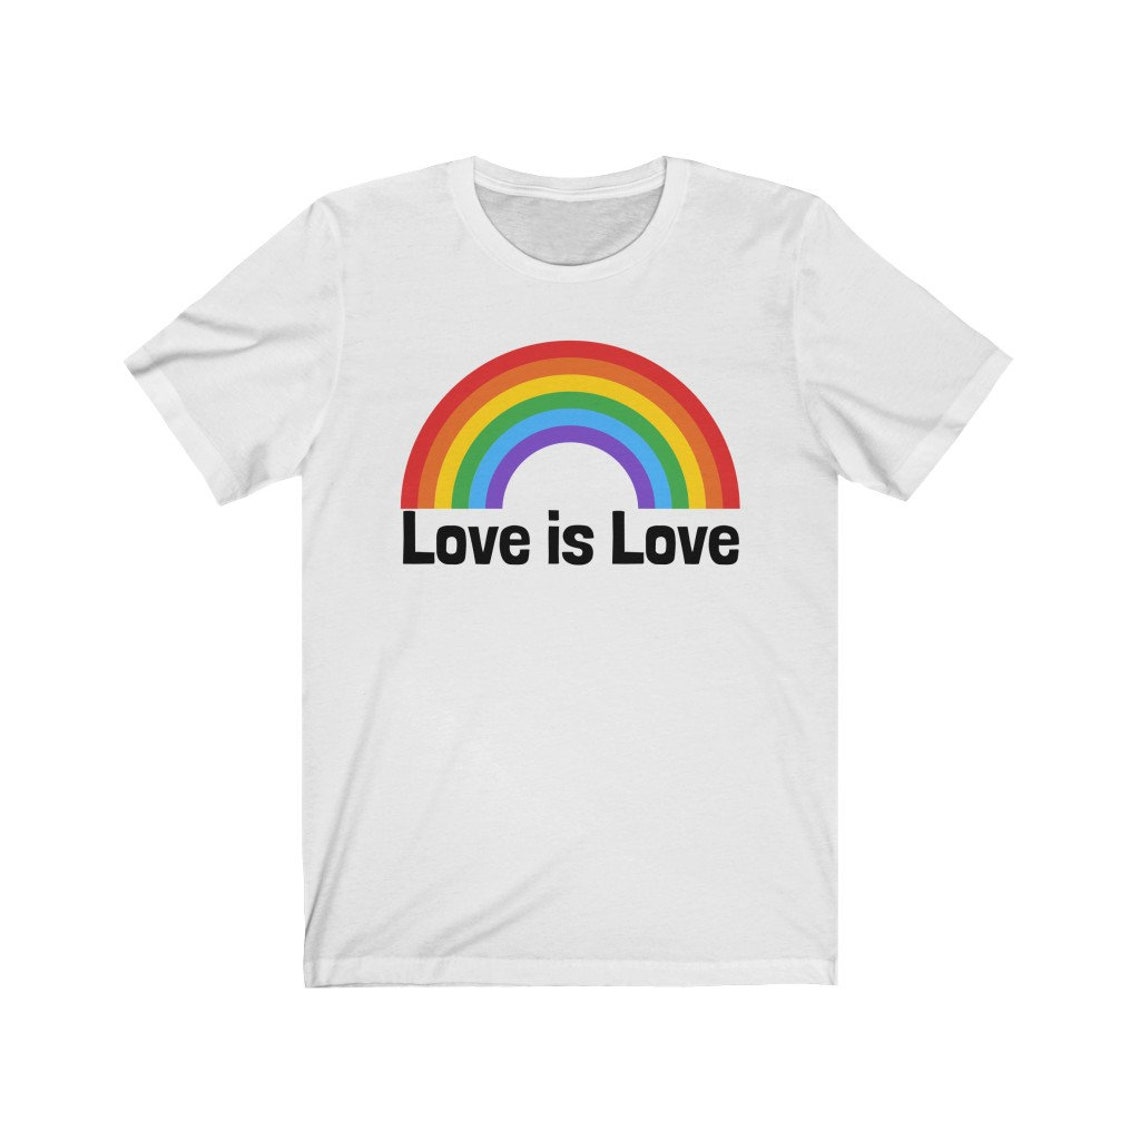 Love is Love Tshirt Love is Love Shirt Pride Tshirt LGBT - Etsy